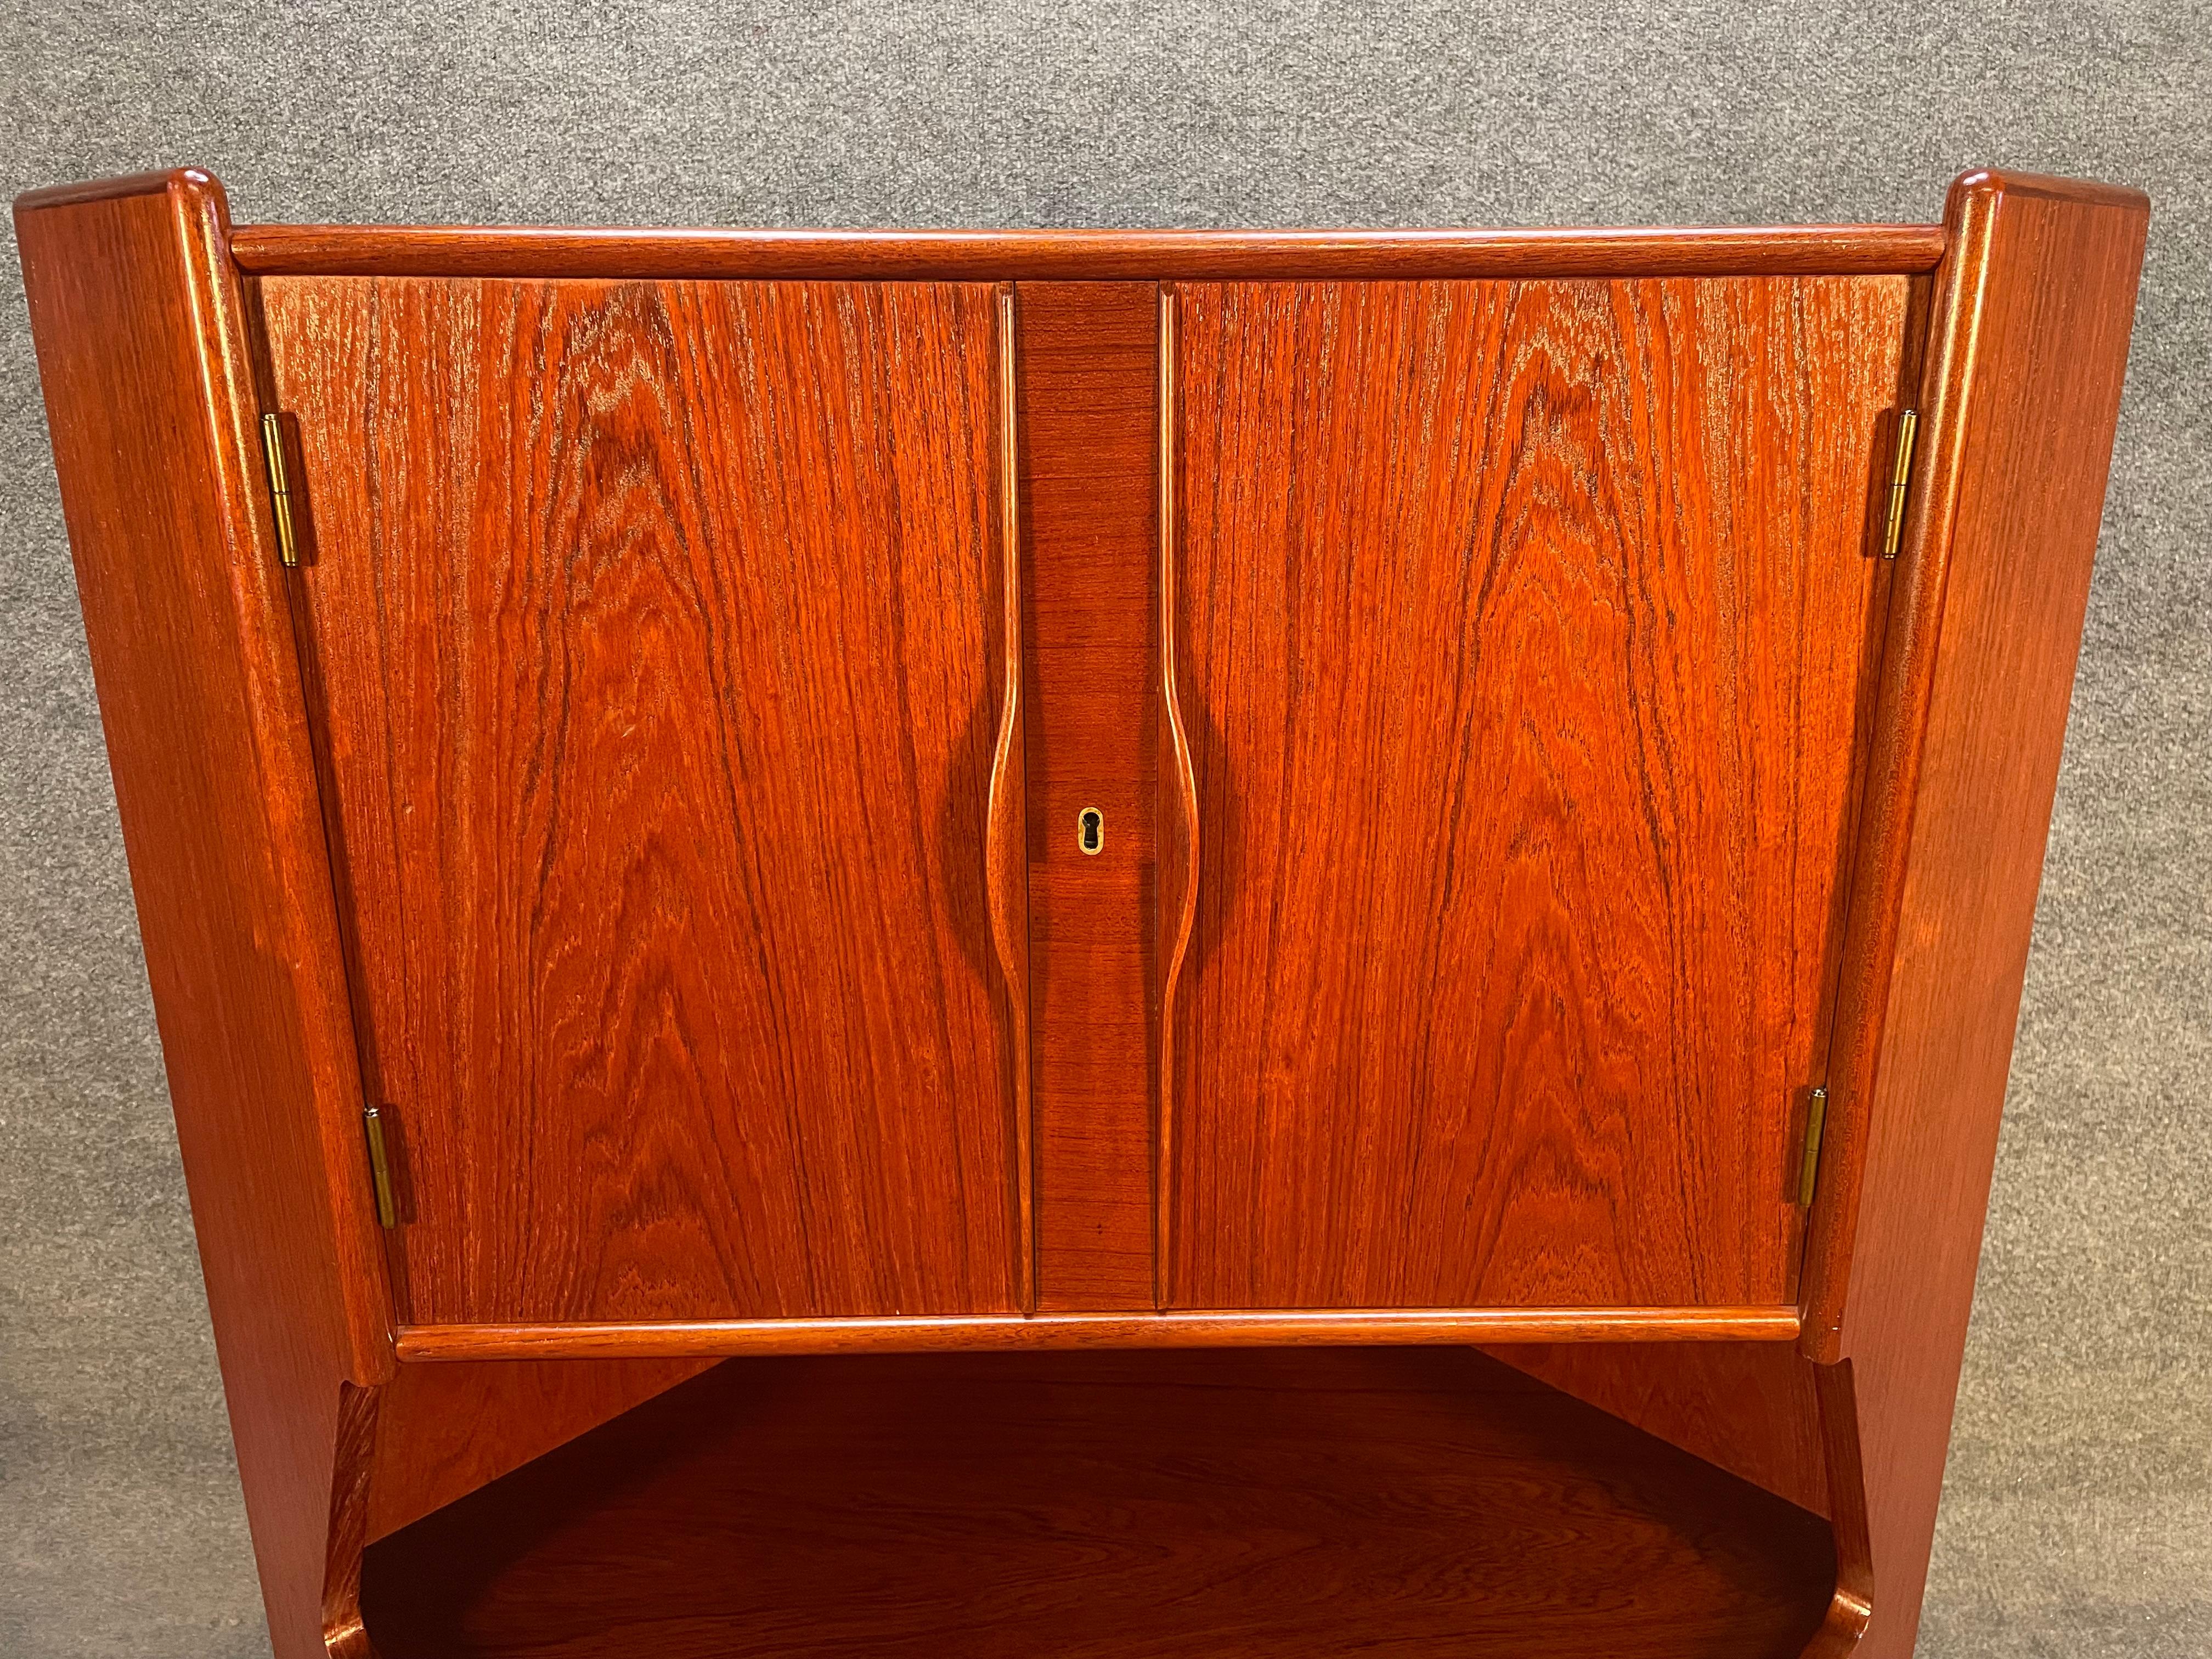 Voici un magnifique meuble d'angle en teck moderne scandinave des années 1960, récemment importé du Danemark en Californie avant sa remise en état.
Cette jolie pièce présente un grain de bois vibrant, un bar sec avec étagères et miroir gravé, trois